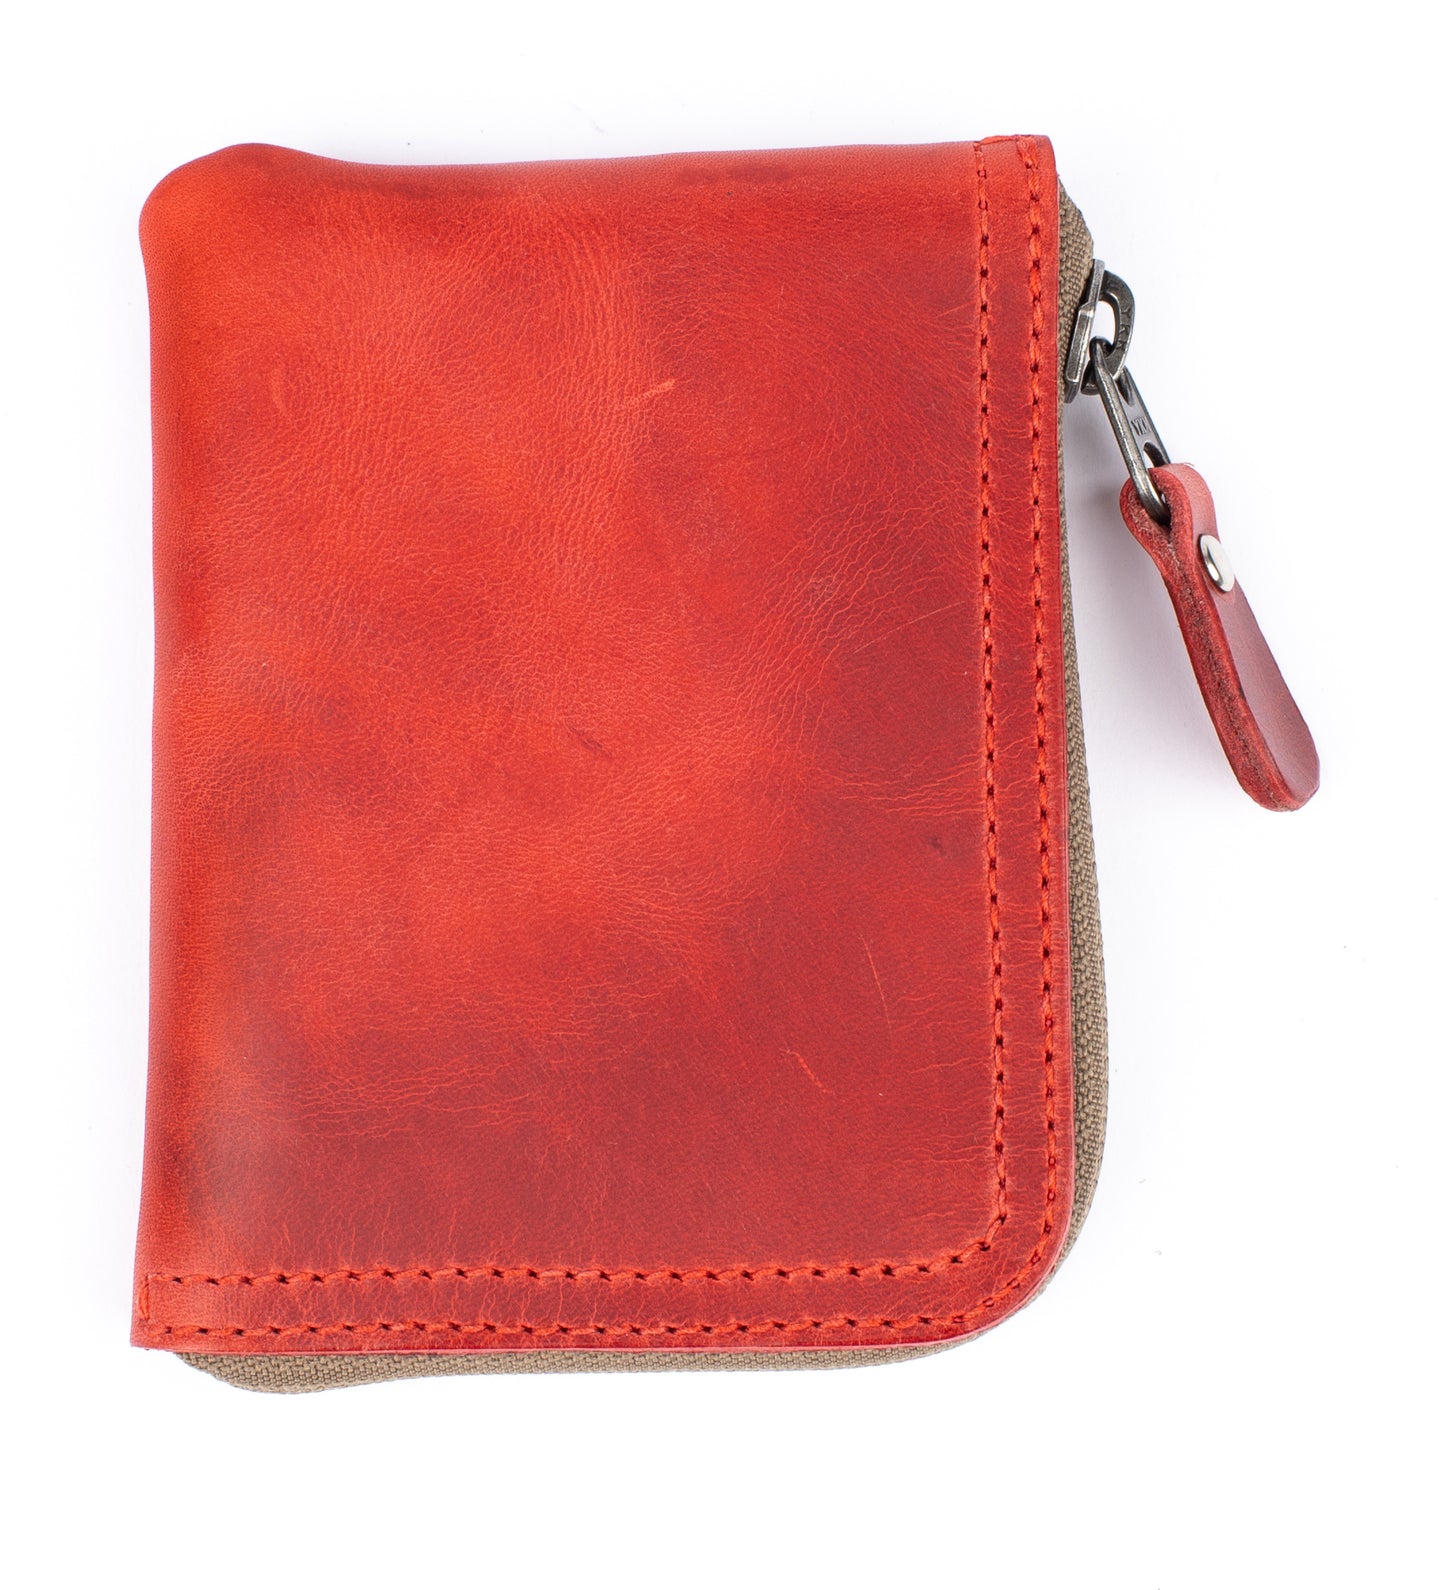 Zip wallet red